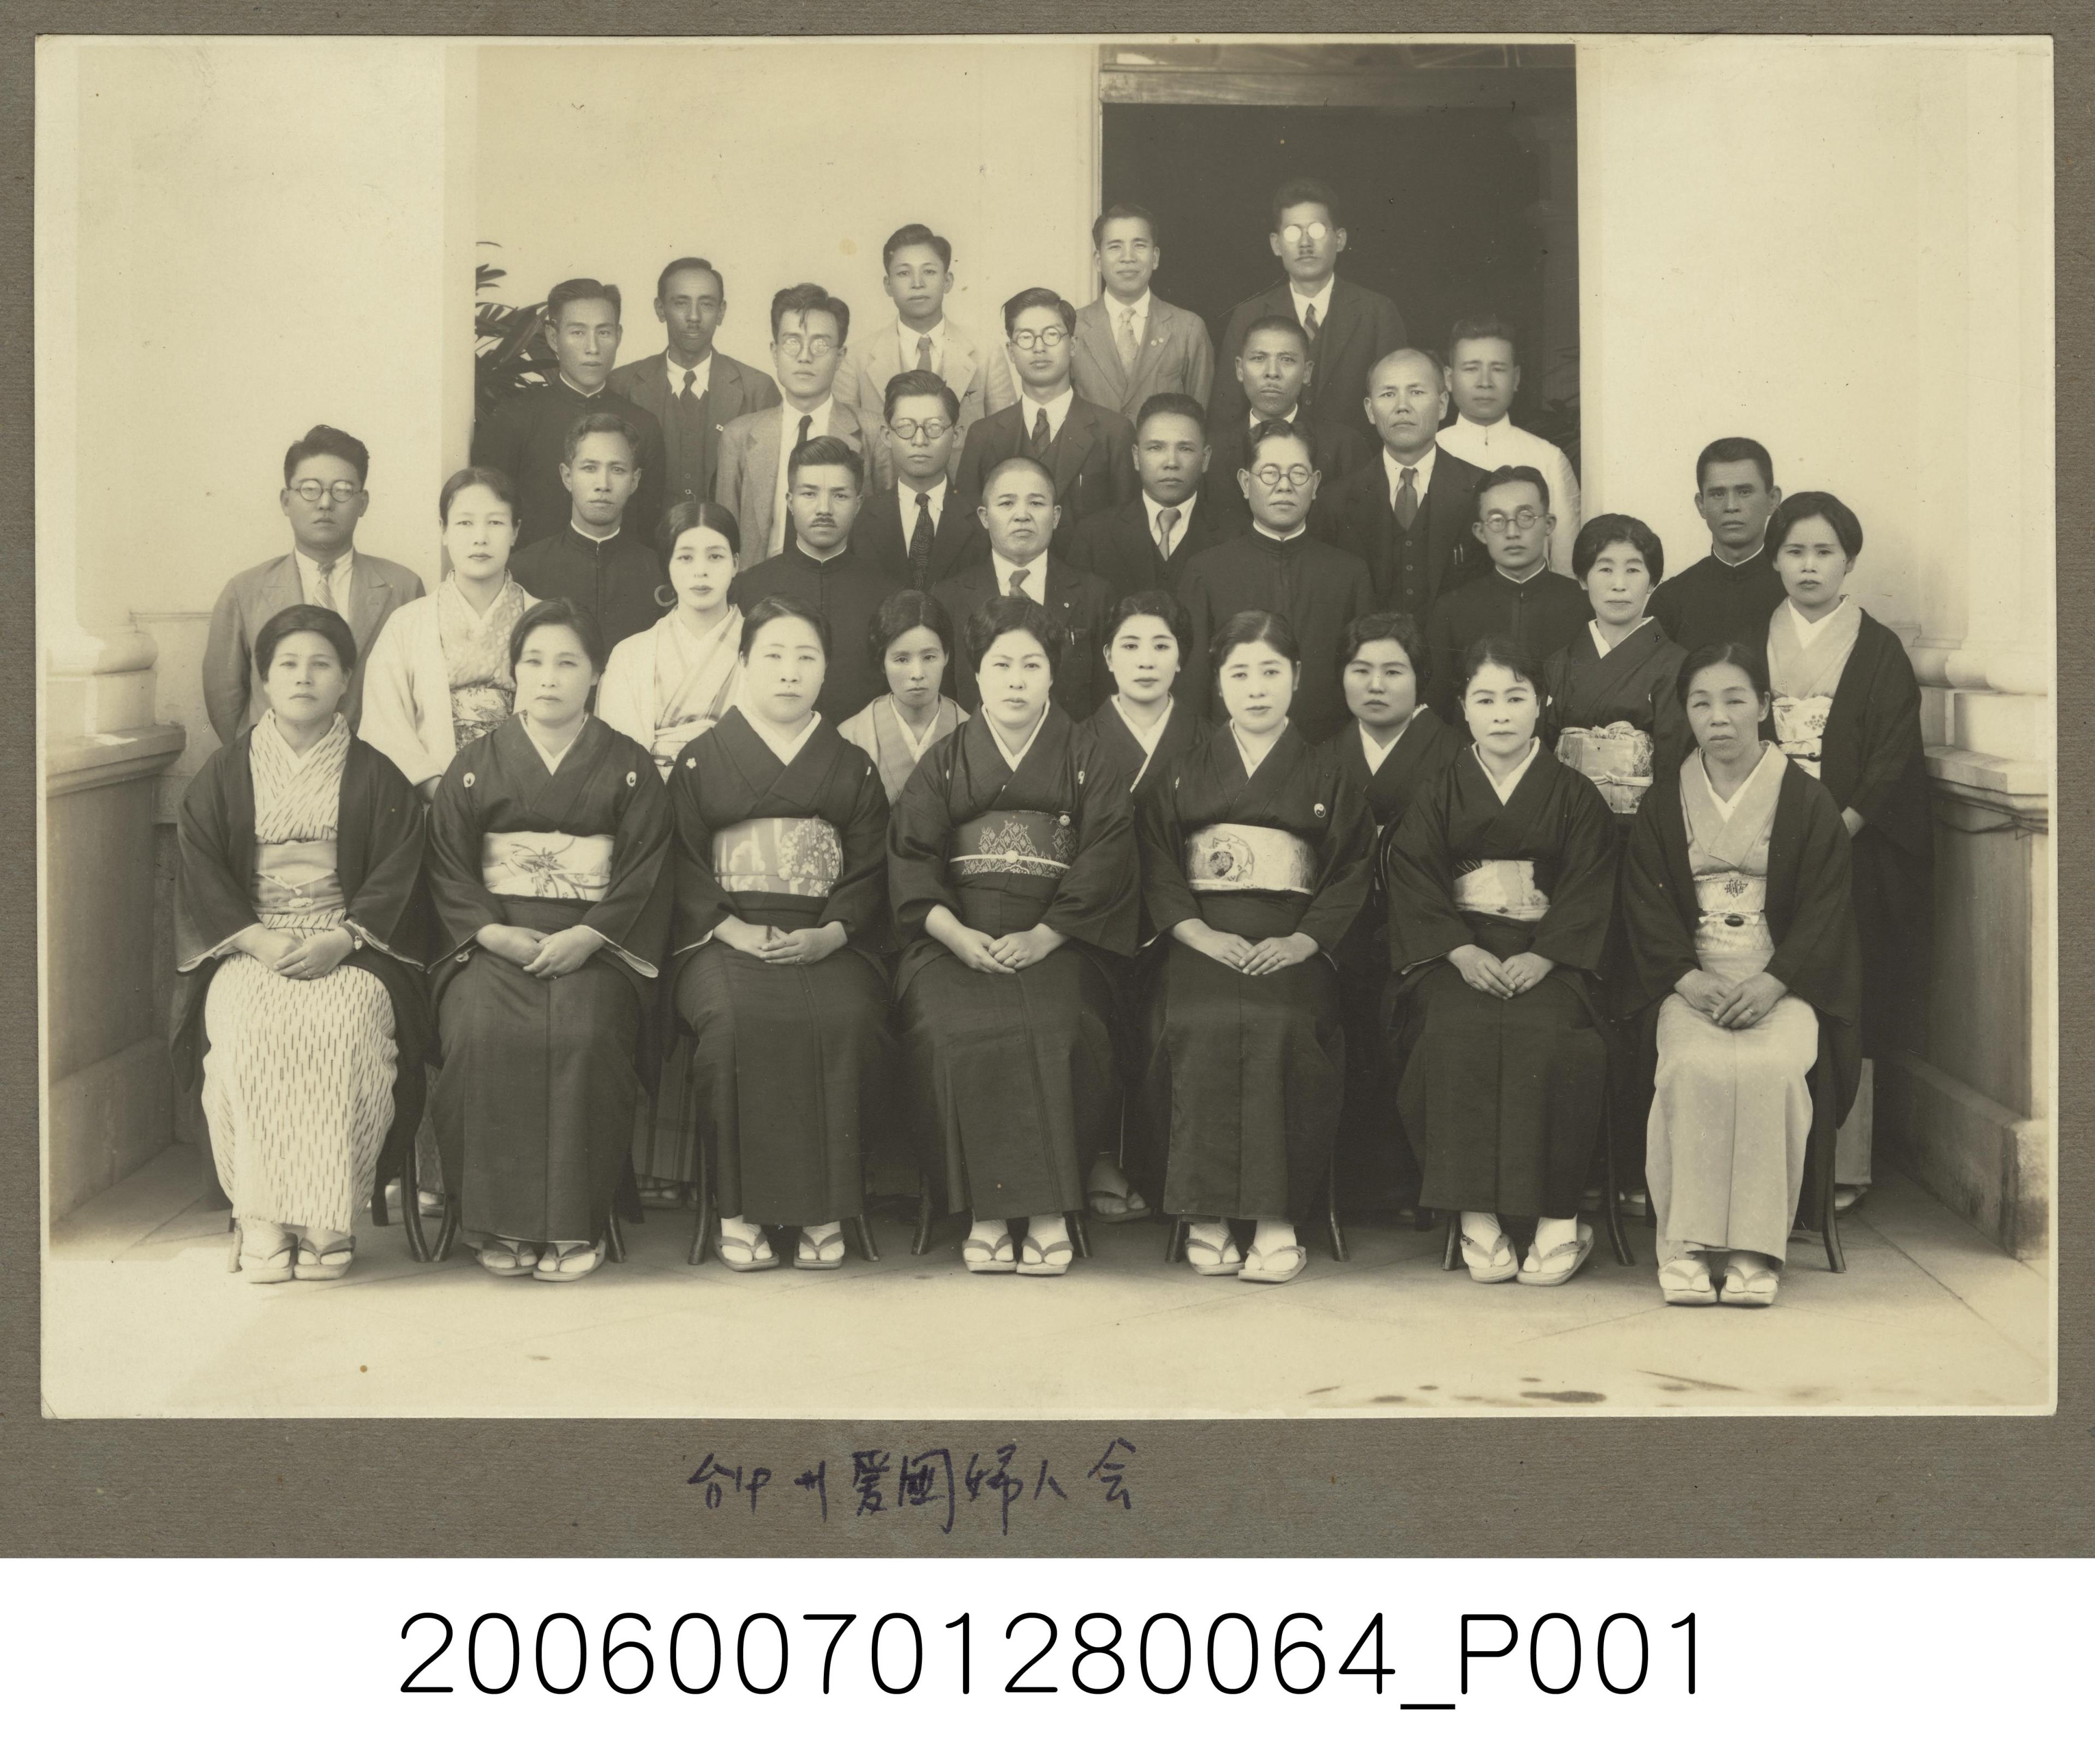 臺中州愛國婦人會團體合照 (共1張)